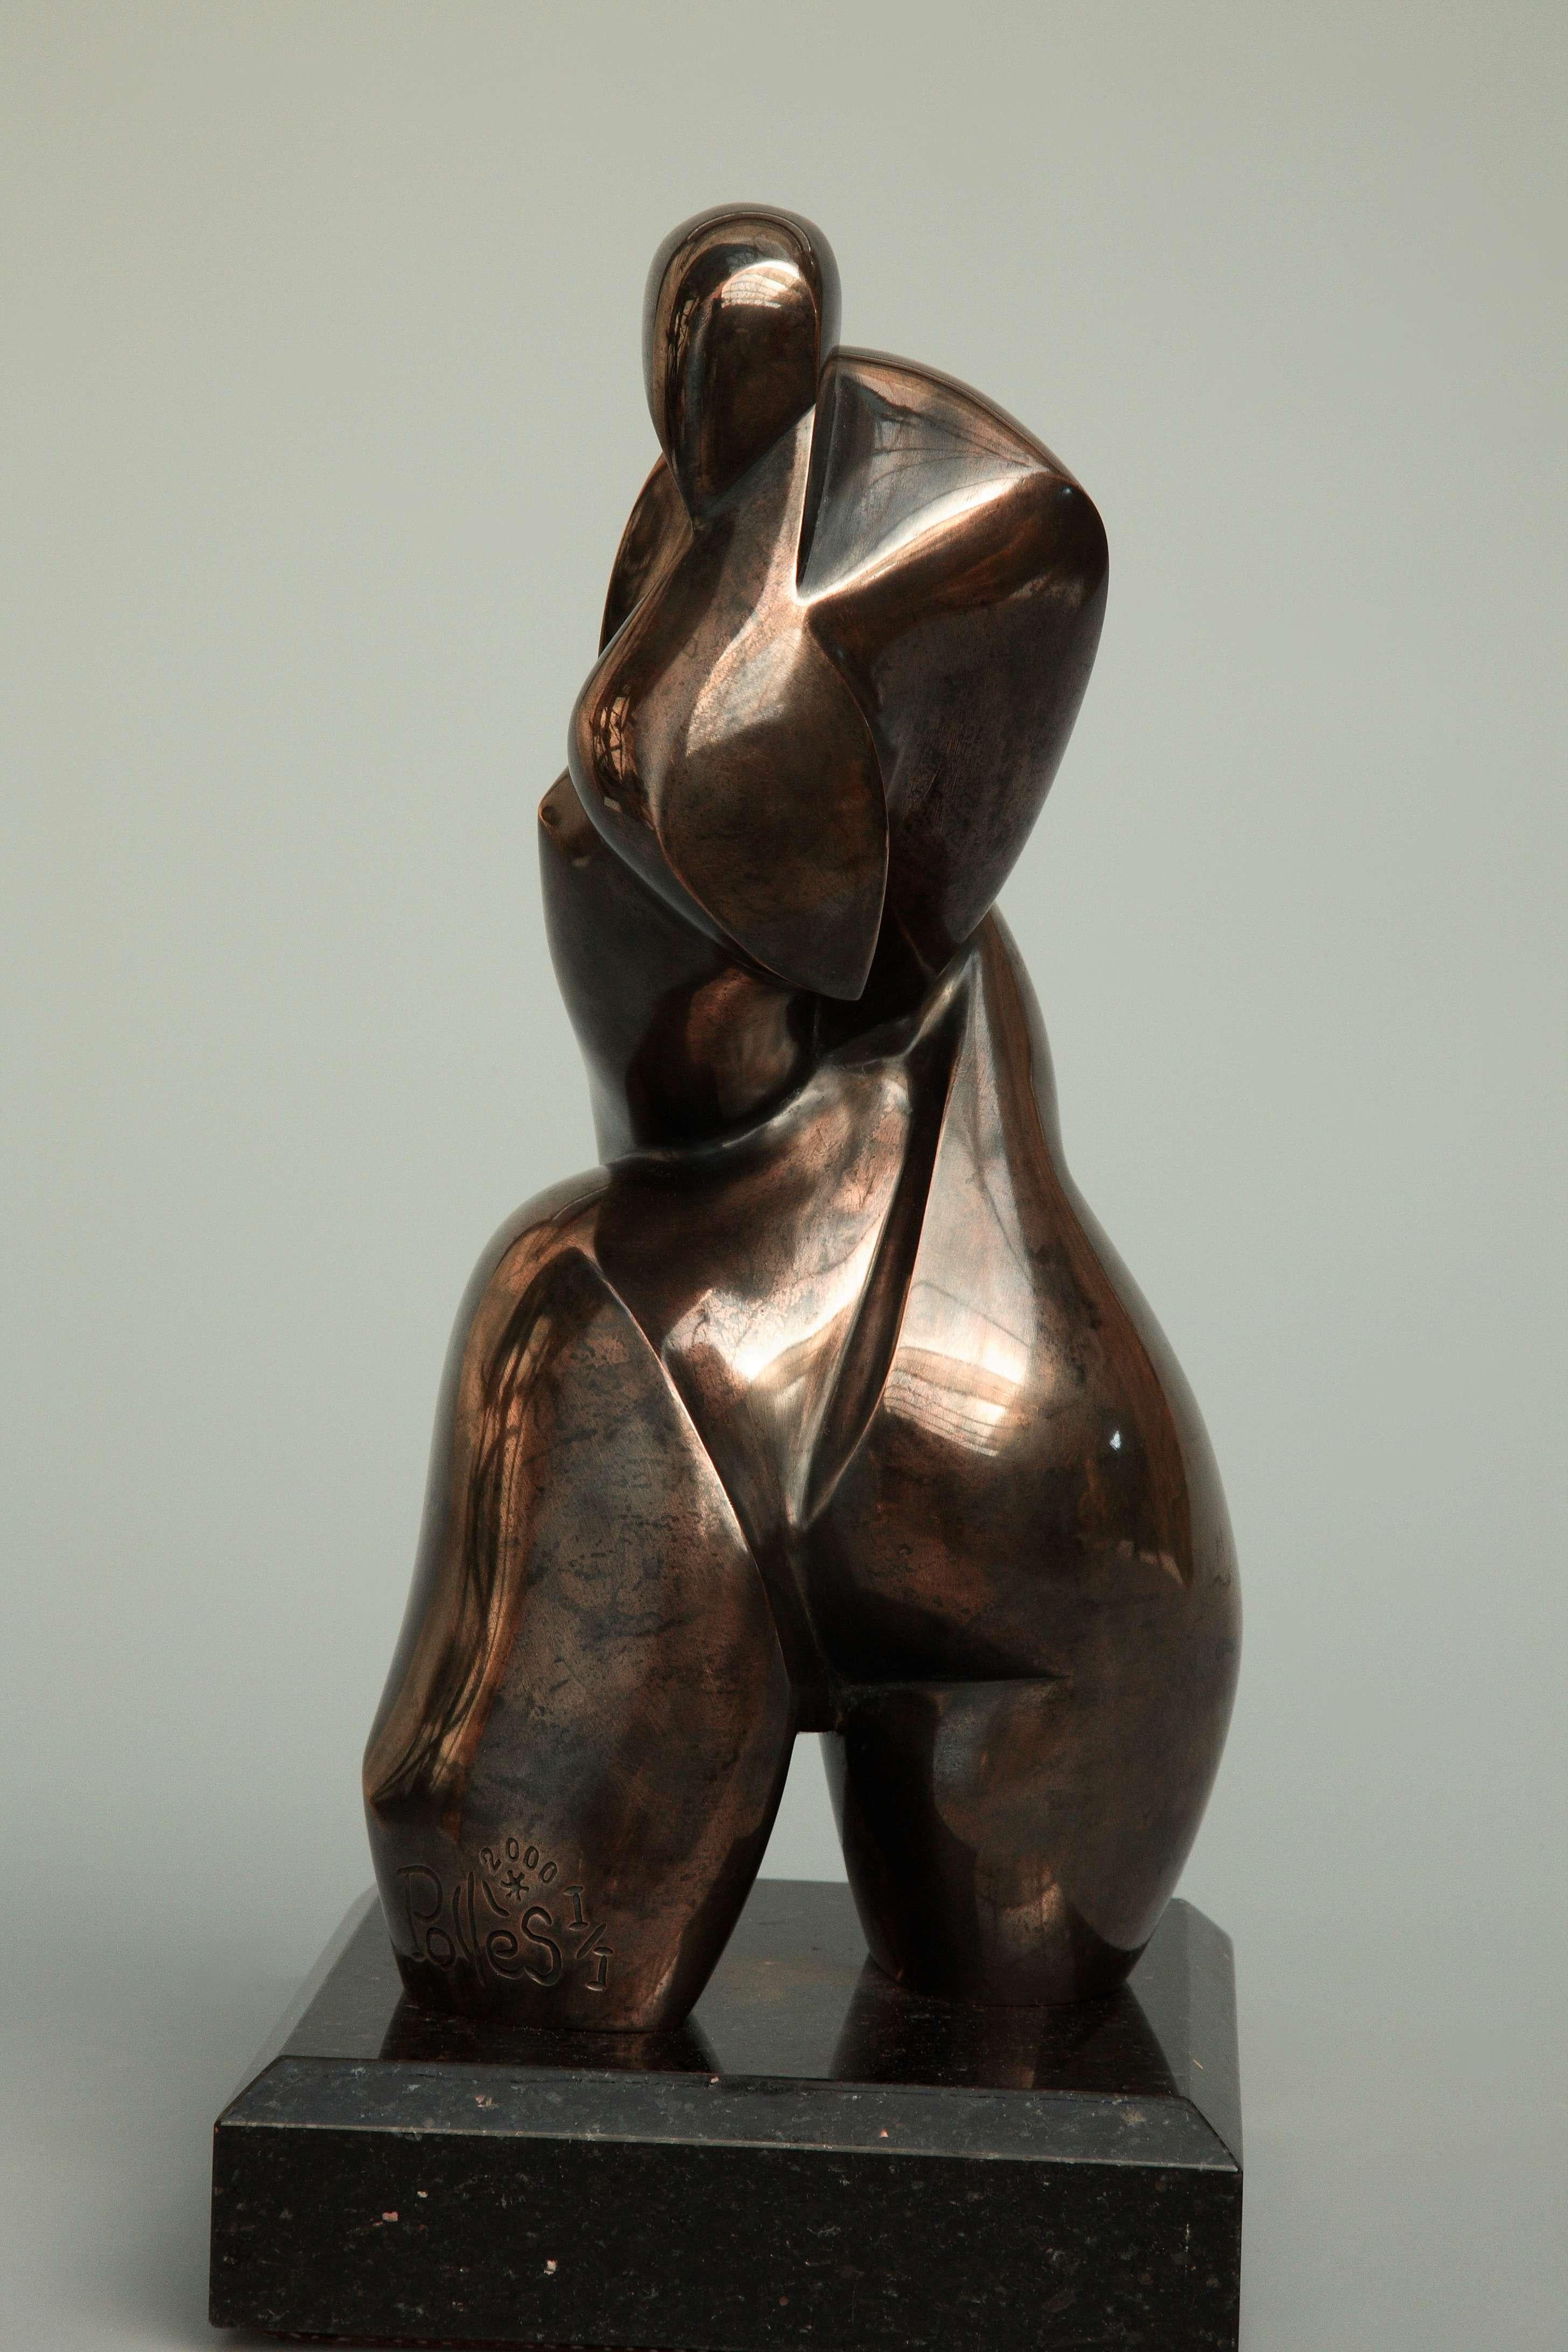 Pollès - Einzigartige Bronze-Skulptur - Abysse
Bronze
1/1
Erstellt 1990, gegossen 2000
28 x 13 x 14 cm
Signiert und nummeriert

BIOGRAPHIE
Pollès wurde 1945 in Paris geboren.
Wie Leonard de Vinci auf der Suche nach anatomischer Perfektion, nach der